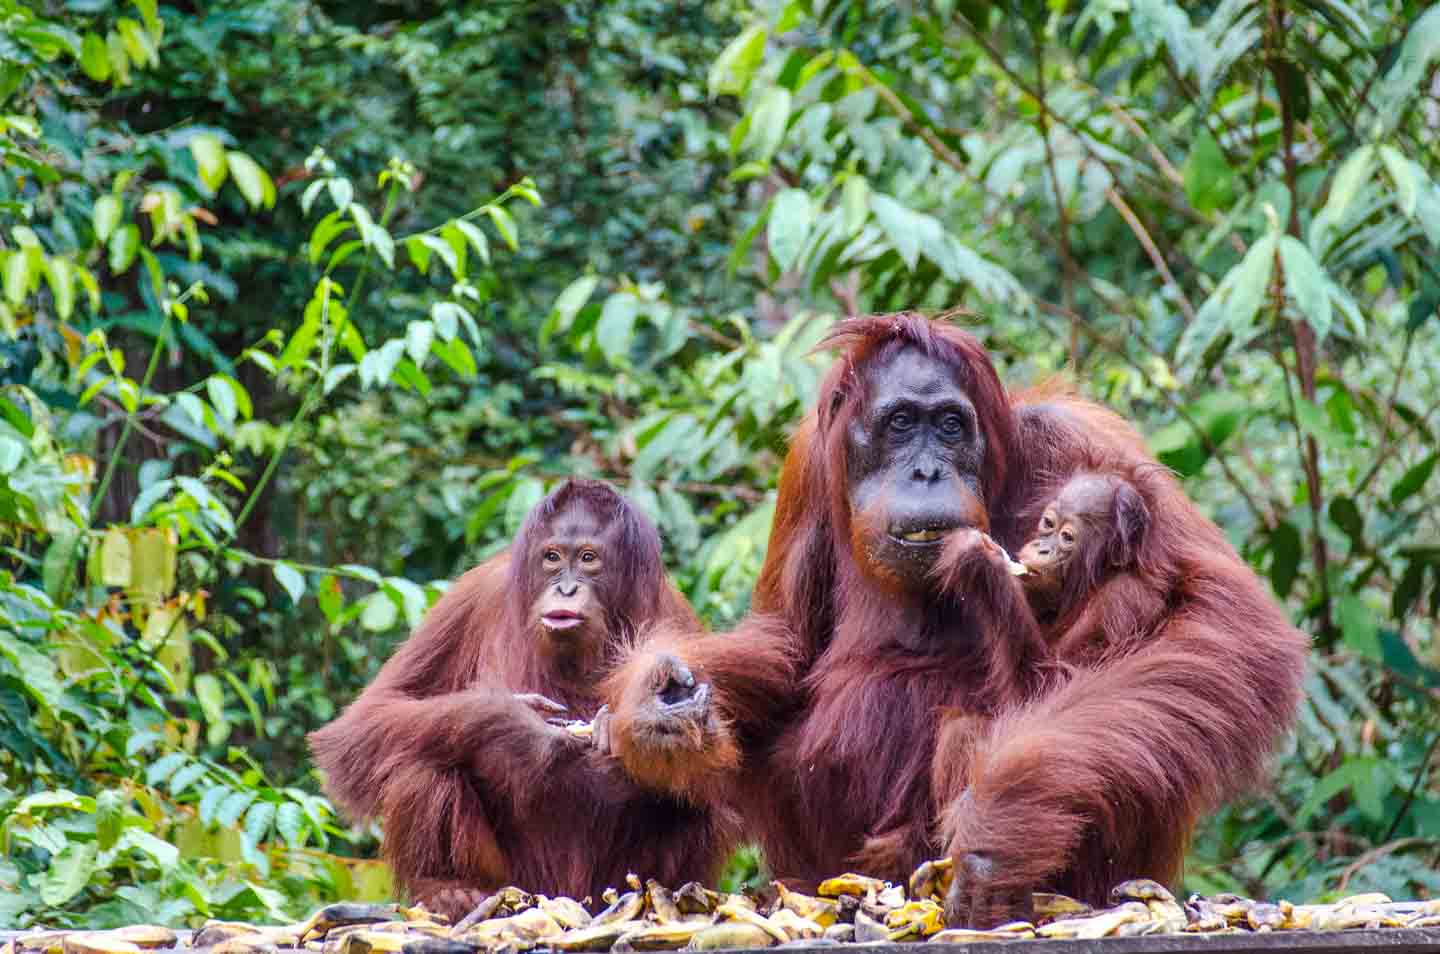 Tanjung Puting National Park Boreno orangutan family  